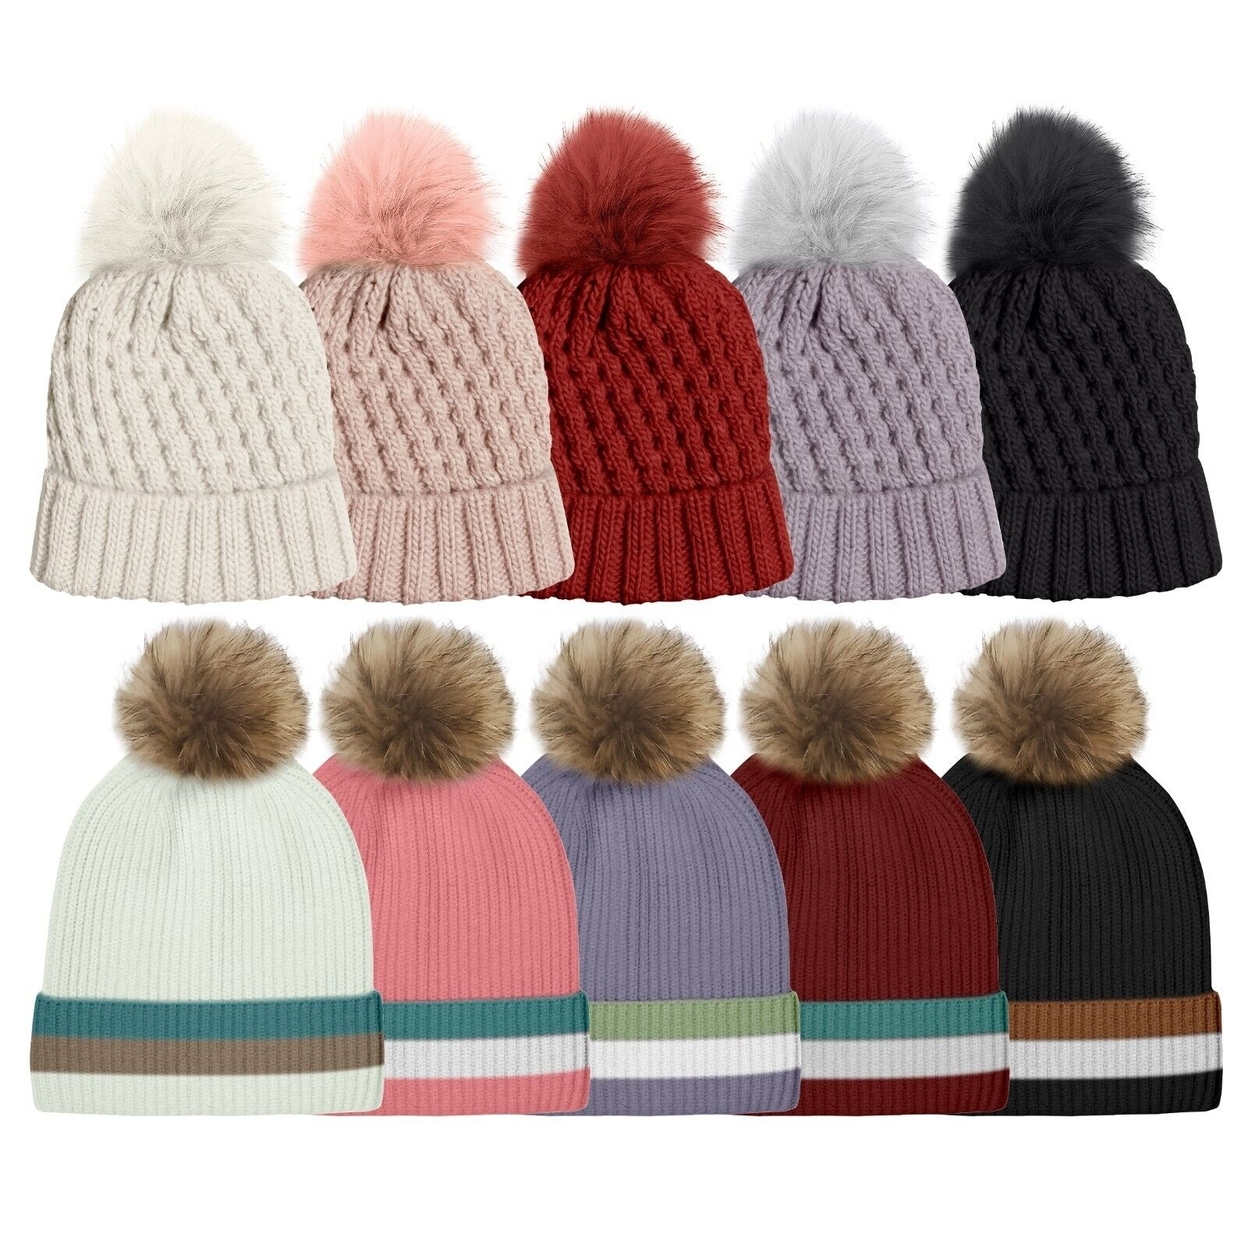 2-Pack: Women's Ultra-Soft Winter Warm Knit Feel Pom Pom Hat W/ Faux Fur Lining - Solid